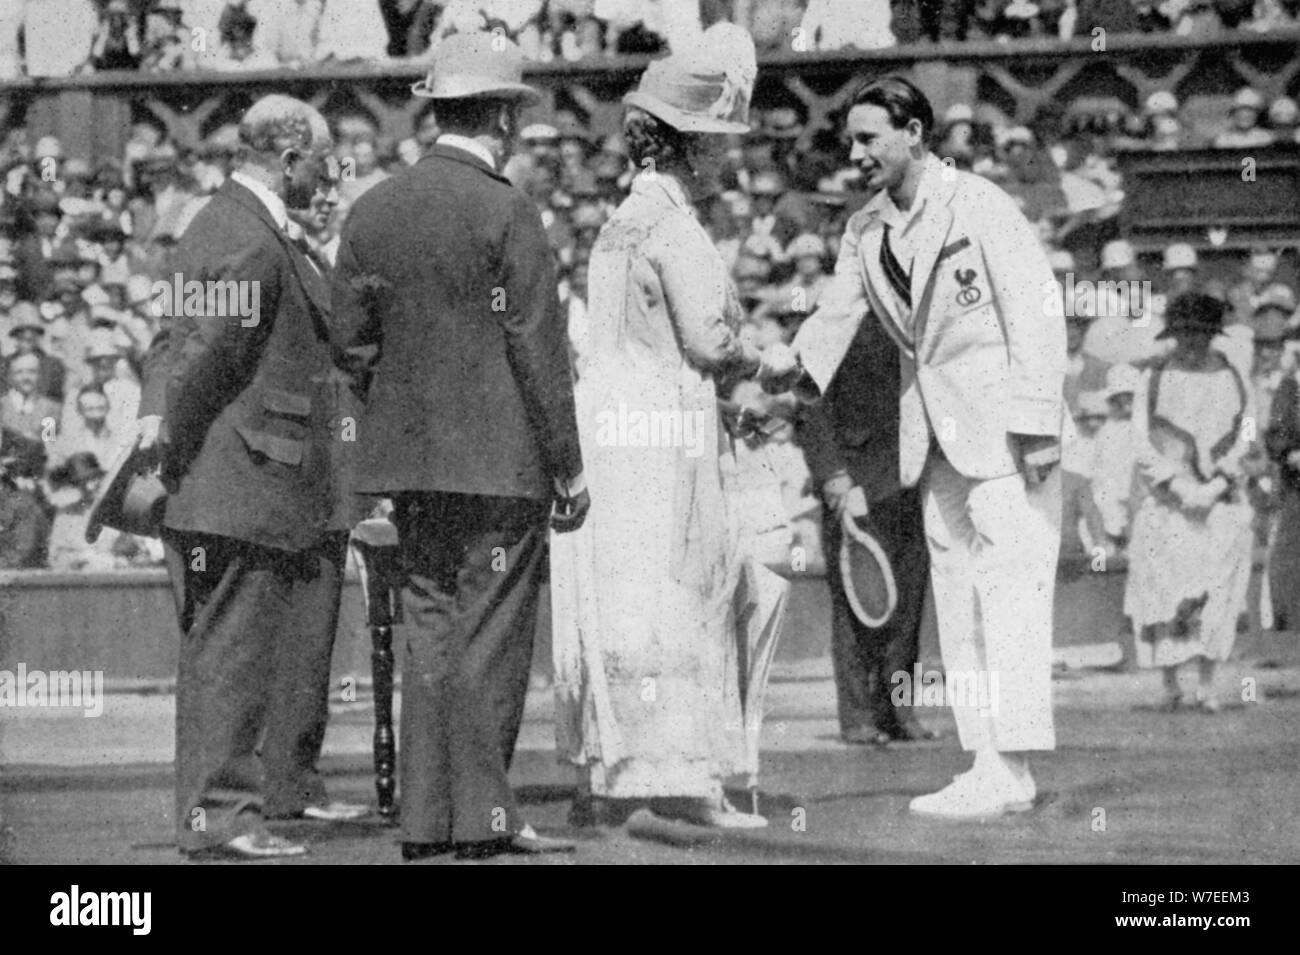 Jean Borotra reçoit sa médaille de la Queen Mary sur le court central, 1926. Artiste : London News Agency Banque D'Images